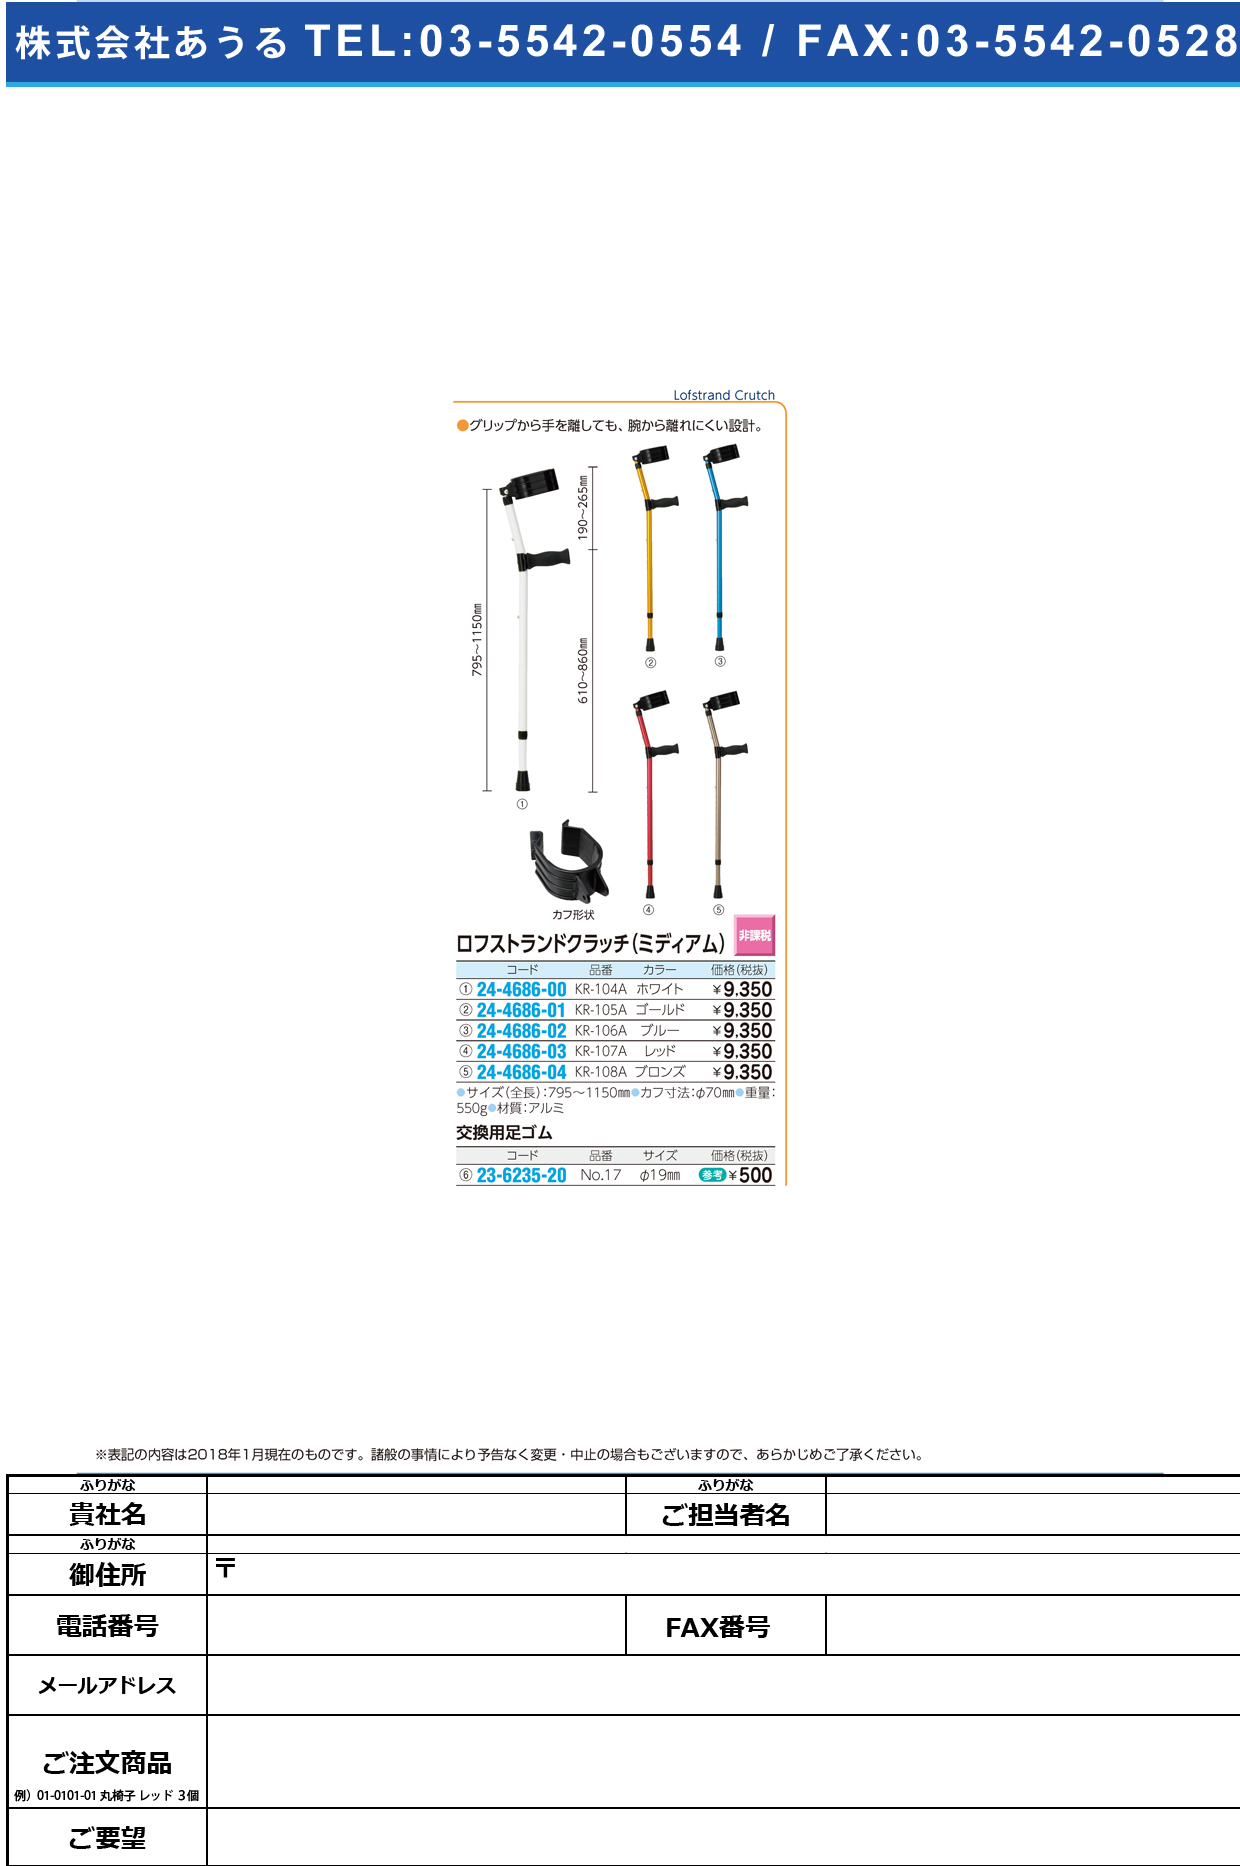 (24-4686-04)ロフストランドクラッチ（ミディアム） KR-108A(ﾌﾞﾛﾝｽﾞ) ﾛﾌｽﾄﾗﾝﾄﾞｸﾗｯﾁ【1本単位】【2019年カタログ商品】